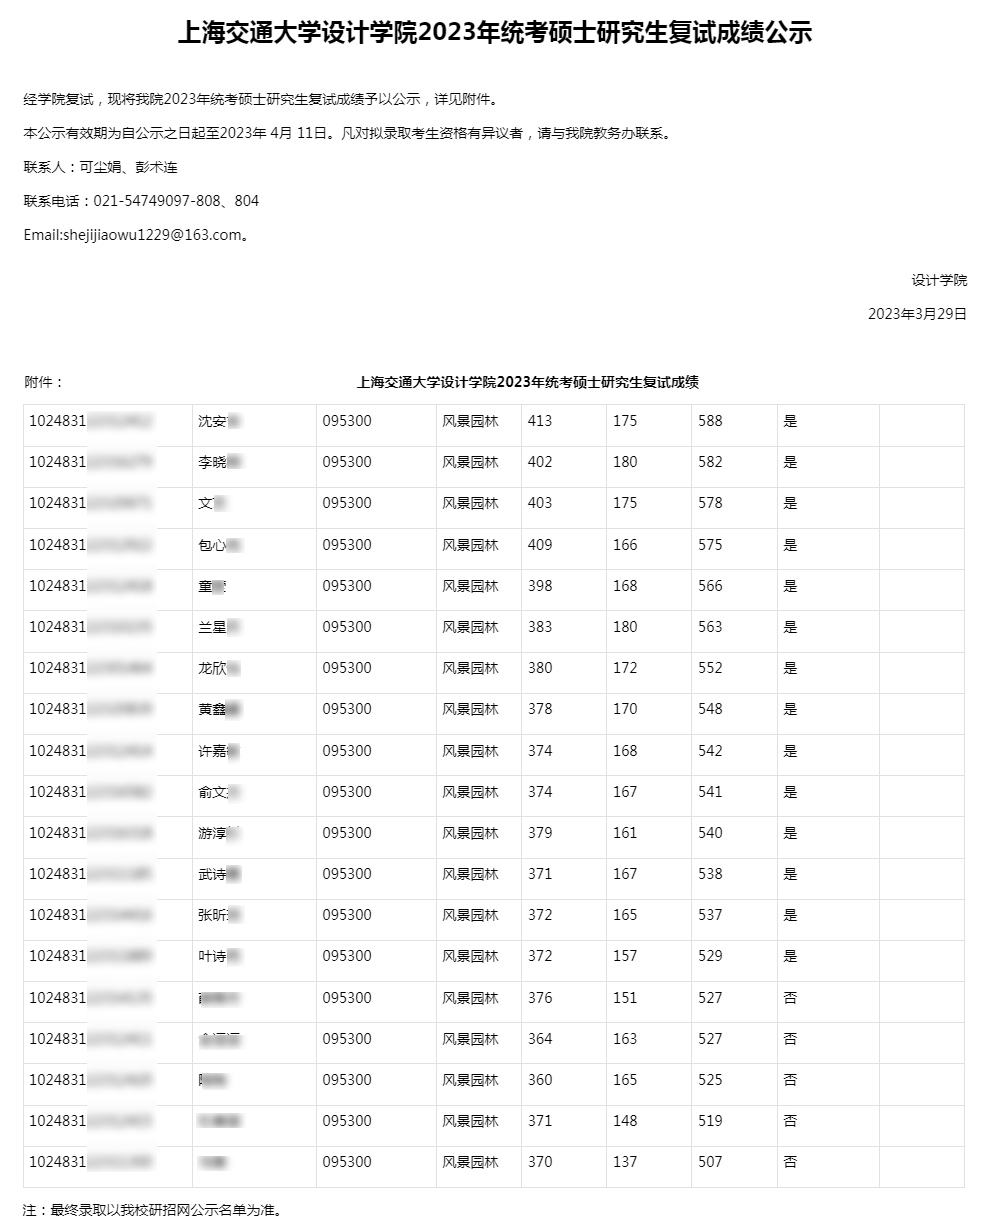 上海交通大学设计学院2023年统考硕士研究生复试成绩公示处理